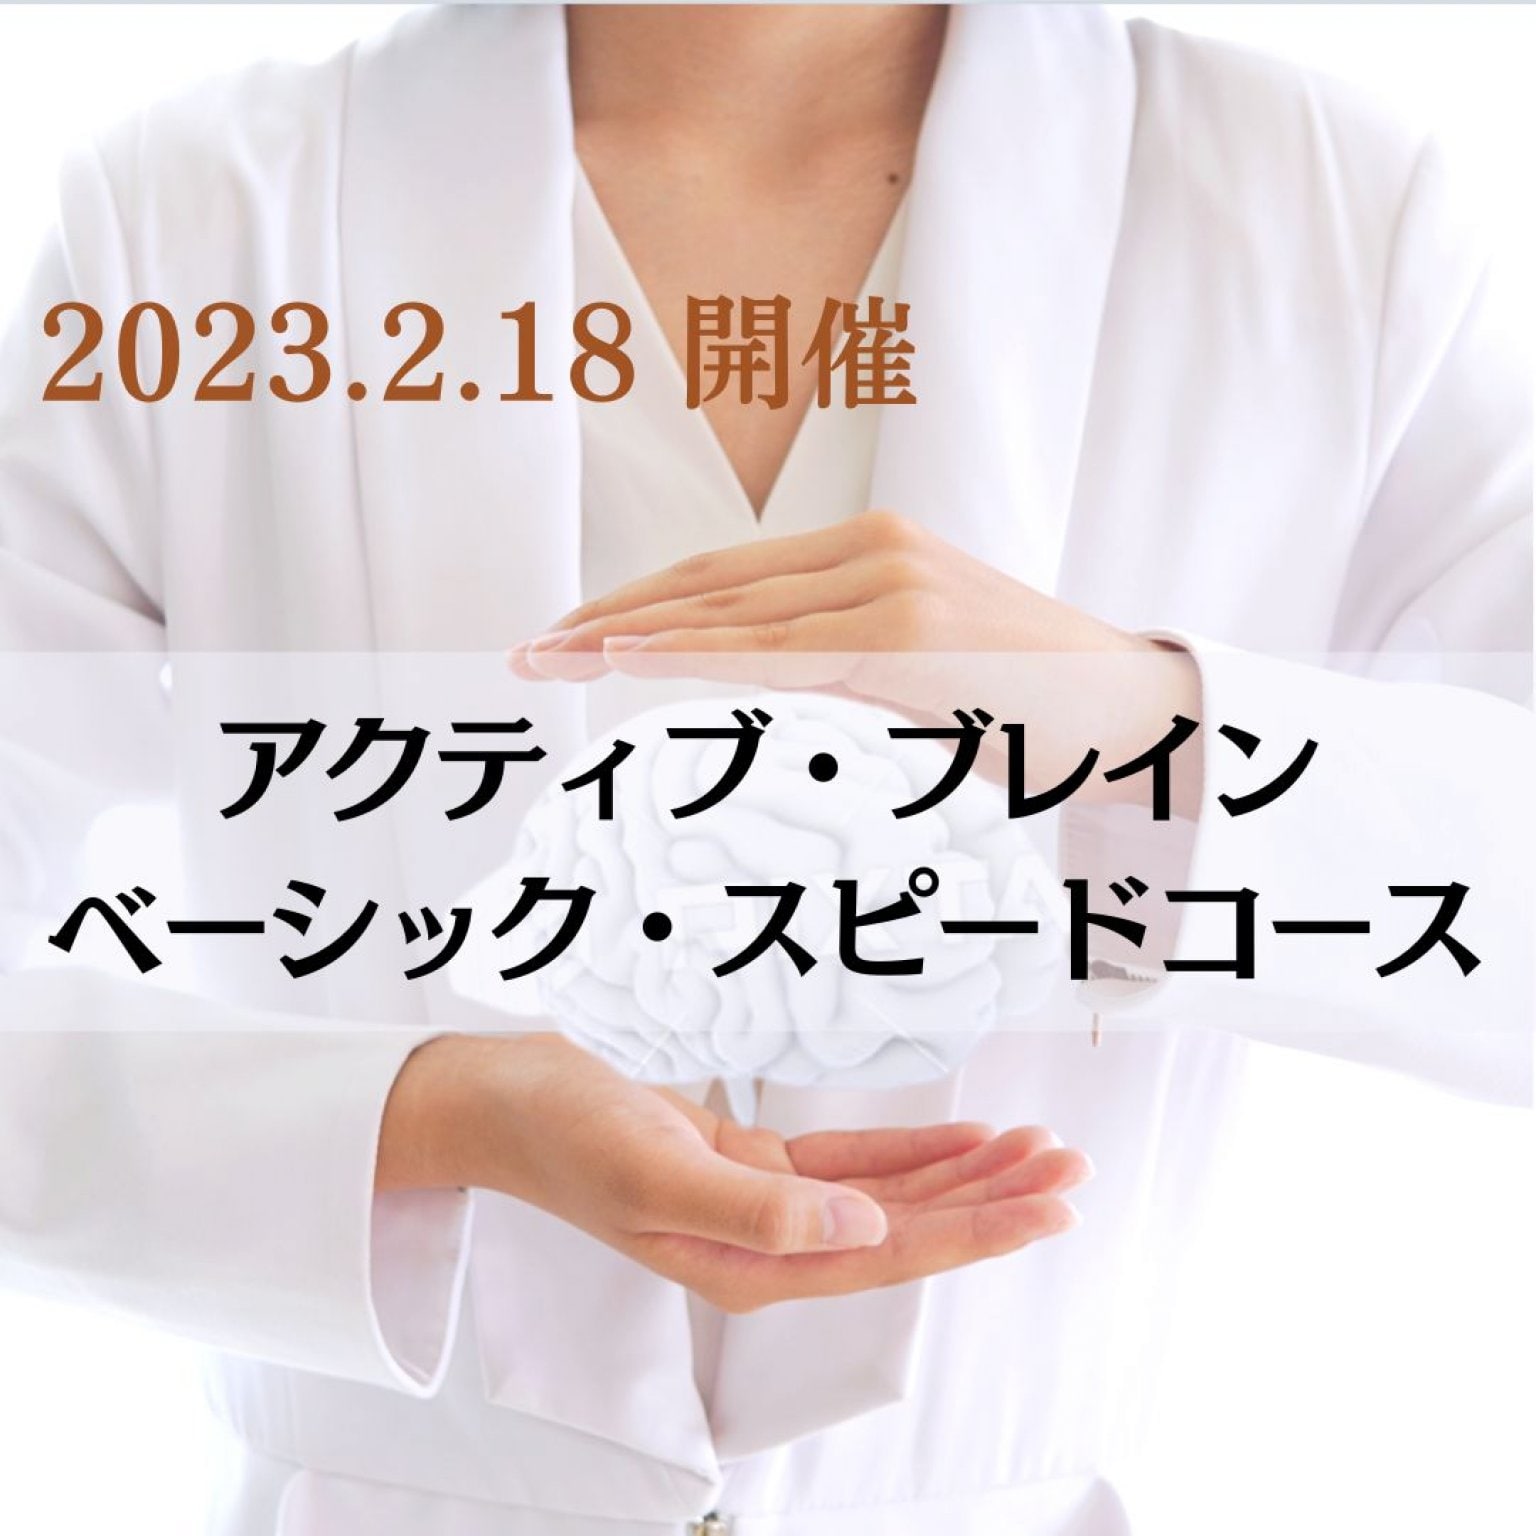 【2/18(土)オンライン開催】アクティブ・ブレイン・ベーシック・スピードコース